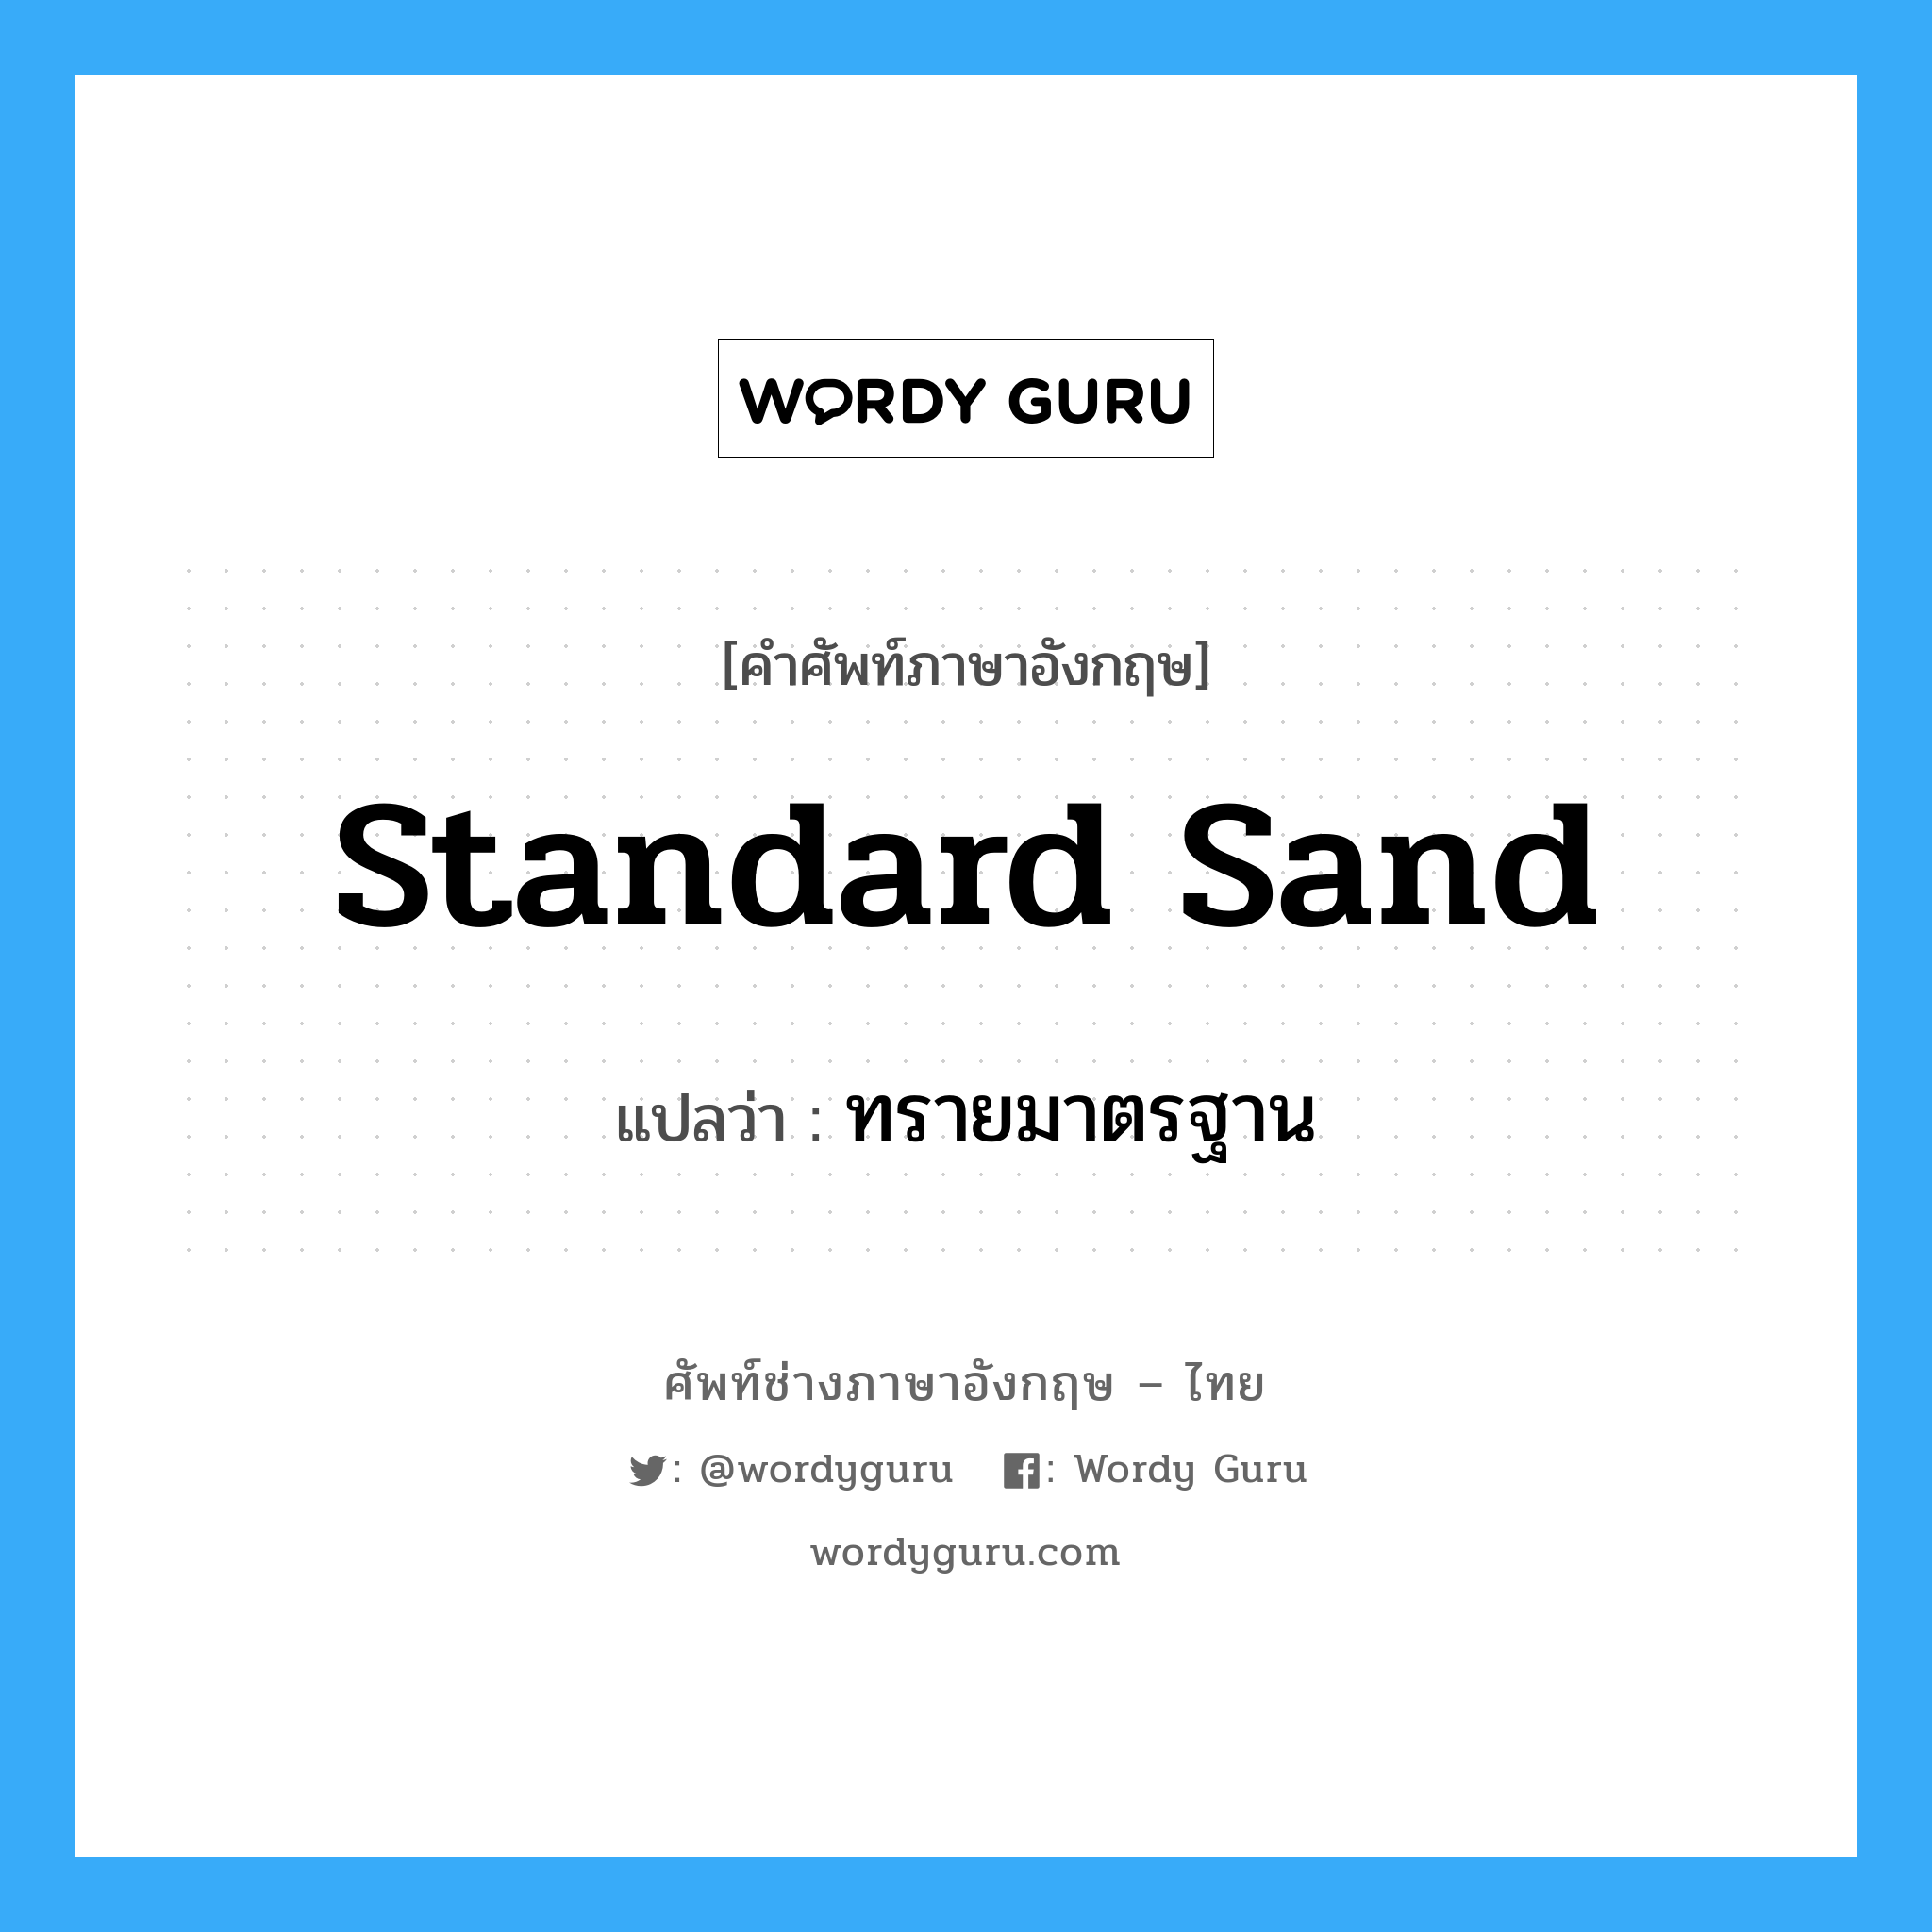 standard sand แปลว่า?, คำศัพท์ช่างภาษาอังกฤษ - ไทย standard sand คำศัพท์ภาษาอังกฤษ standard sand แปลว่า ทรายมาตรฐาน